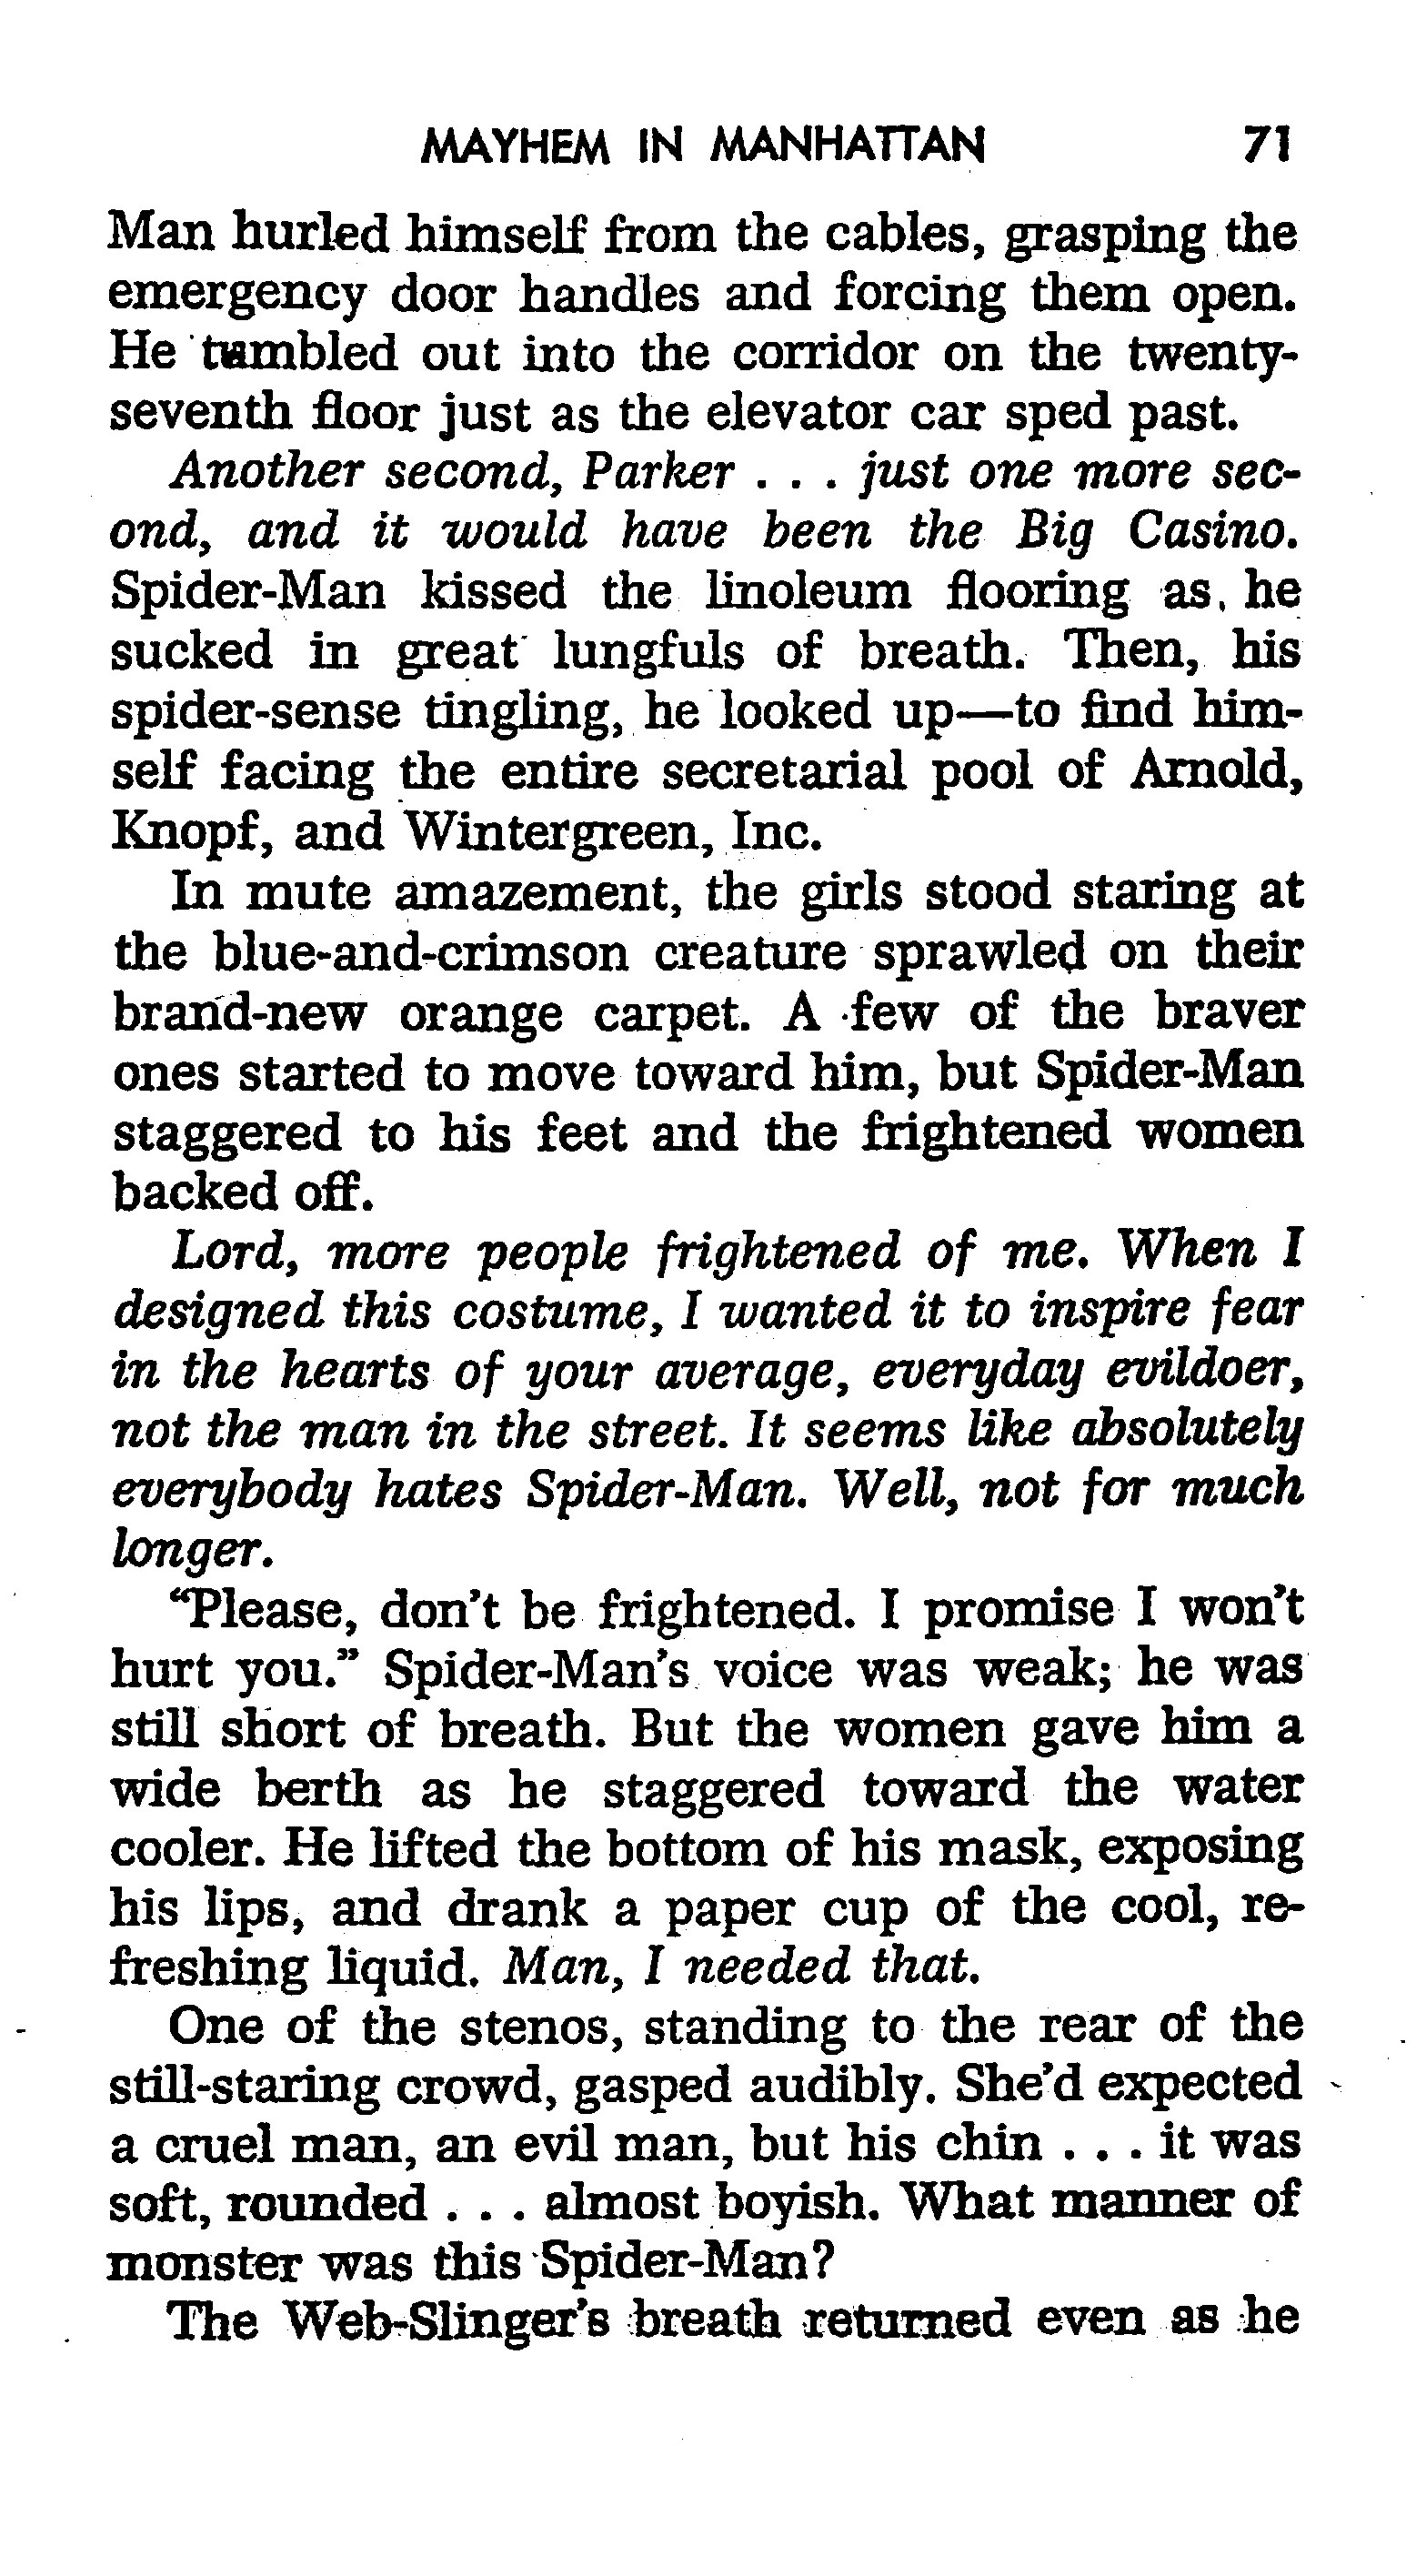 Read online The Amazing Spider-Man: Mayhem in Manhattan comic -  Issue # TPB (Part 1) - 72